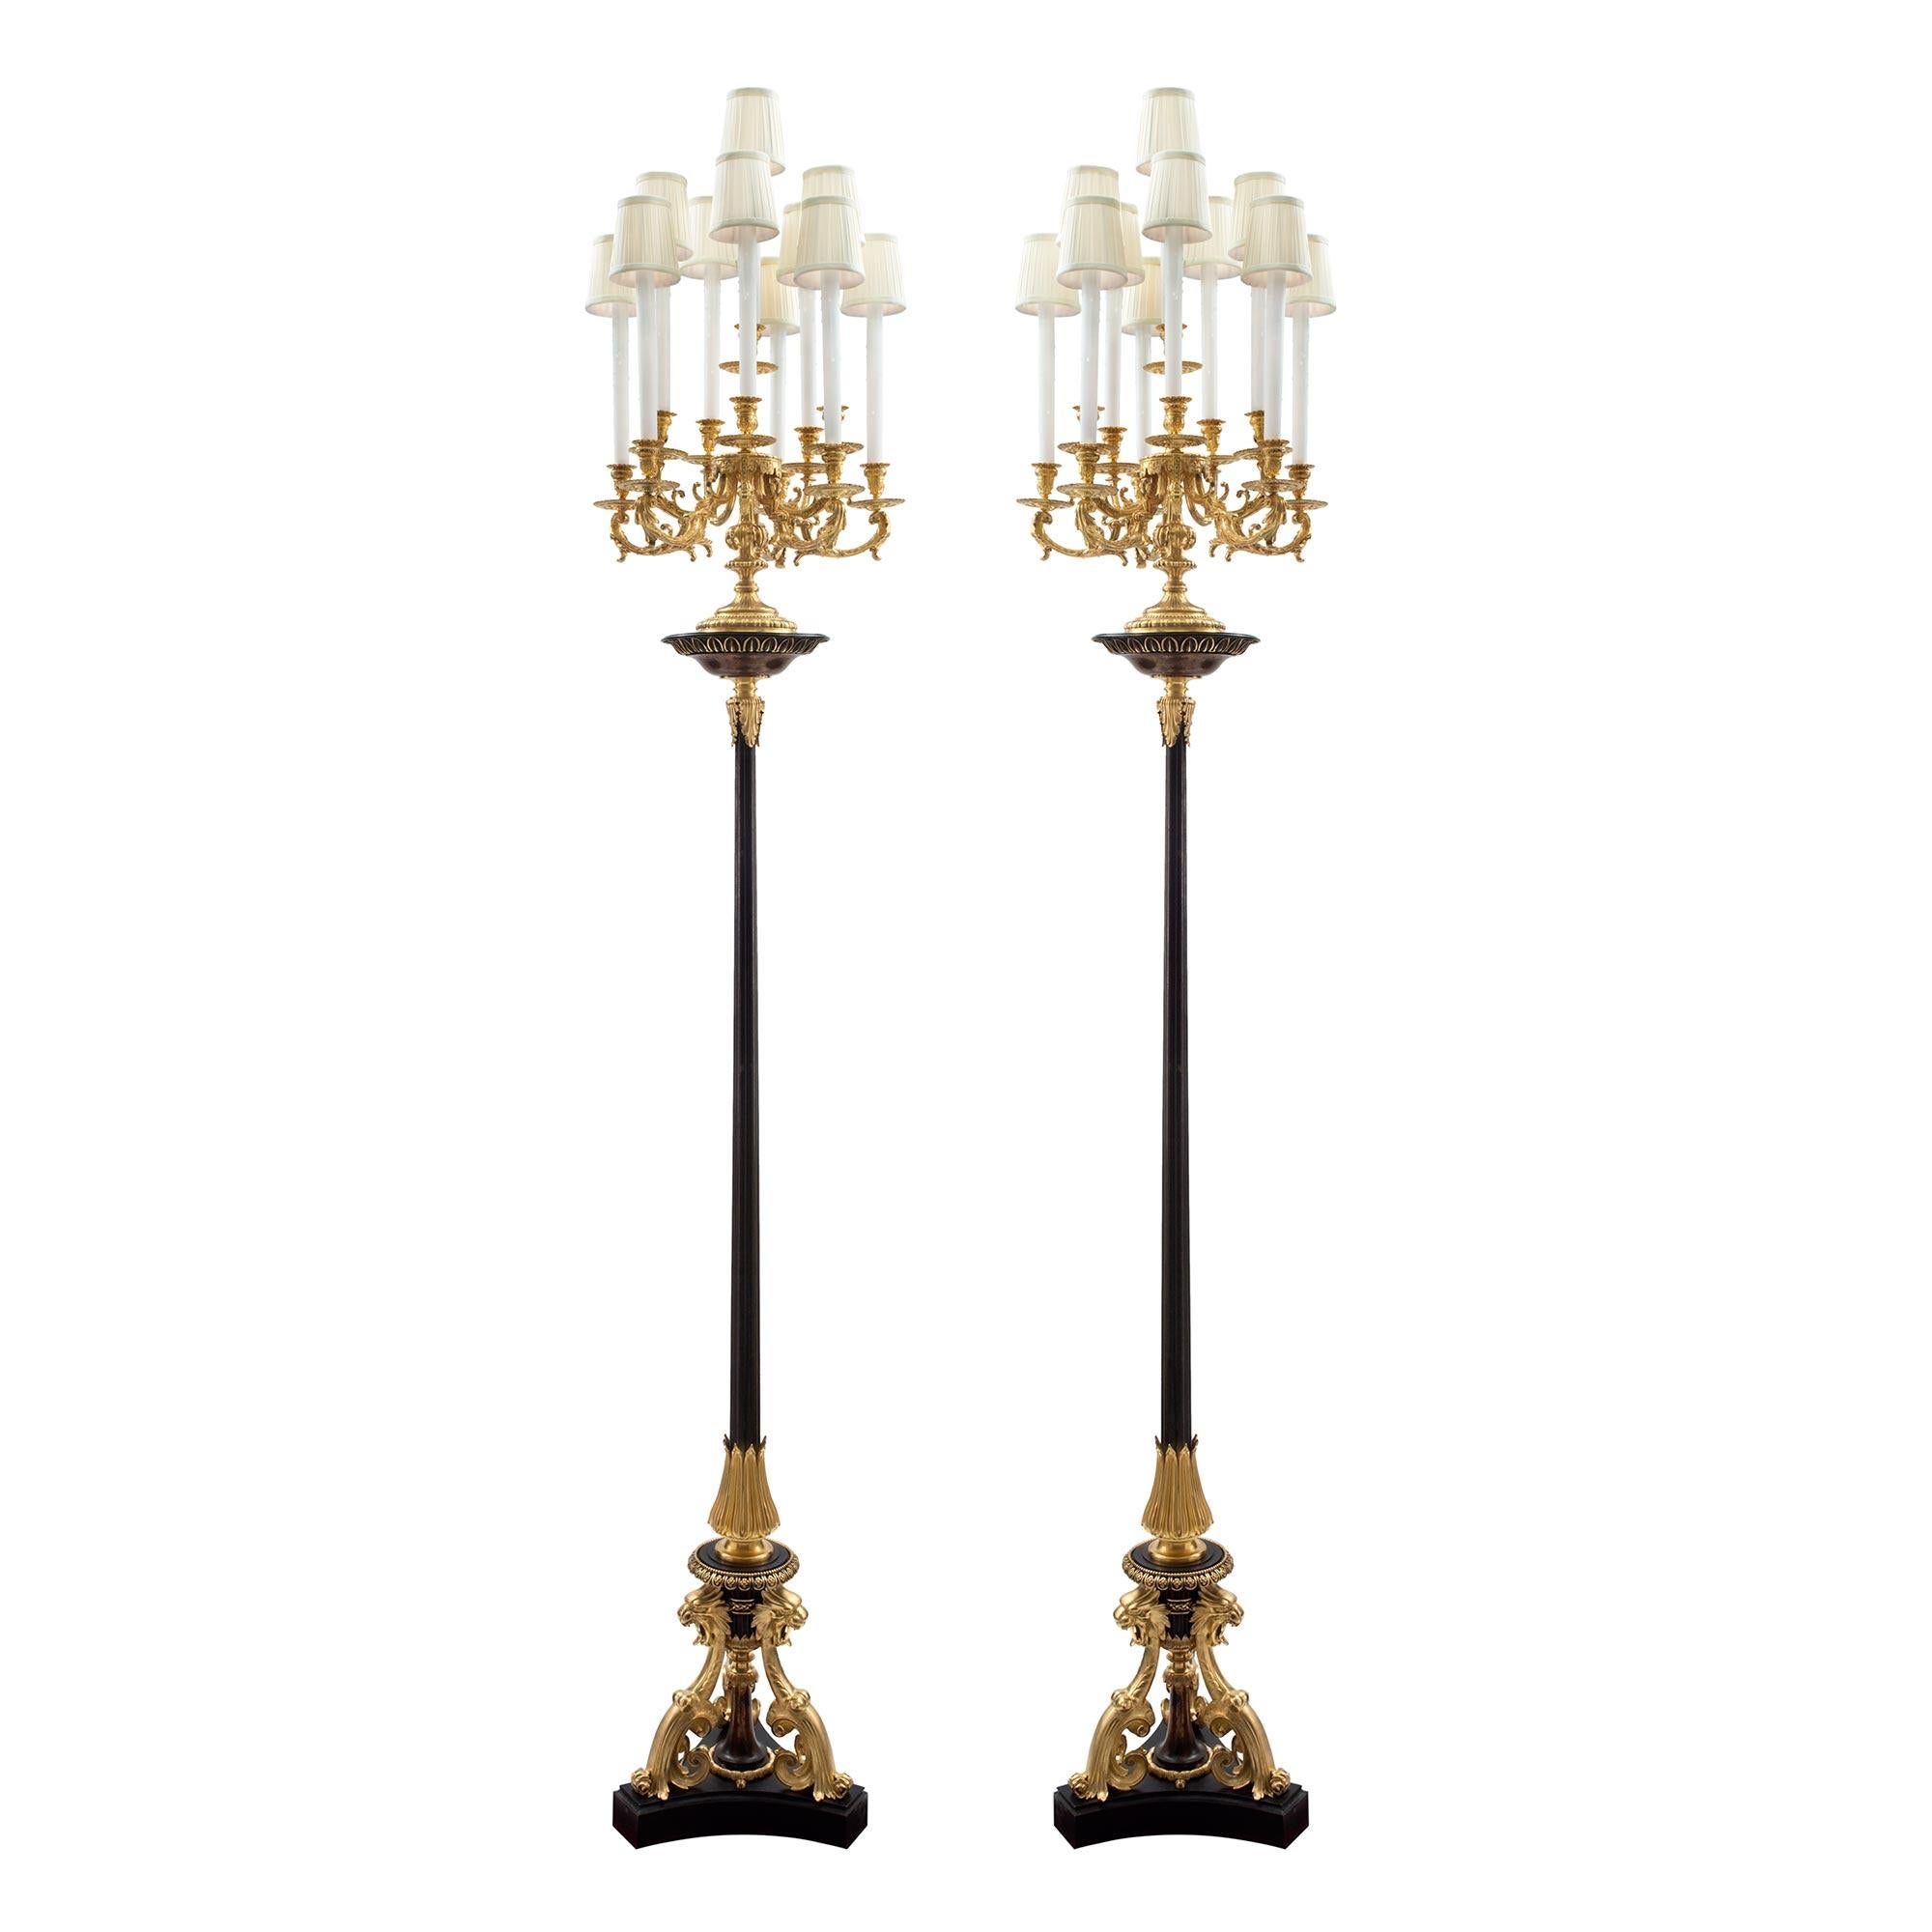 Ein aufsehenerregendes und großformatiges Paar französischer Stehlampen / Torchières aus Ormolu und patinierter Bronze aus der Renaissance des 19. Jahrhunderts, die Henri Picard zugeschrieben werden. Jede Stehlampe wird von einem feinen dreieckigen